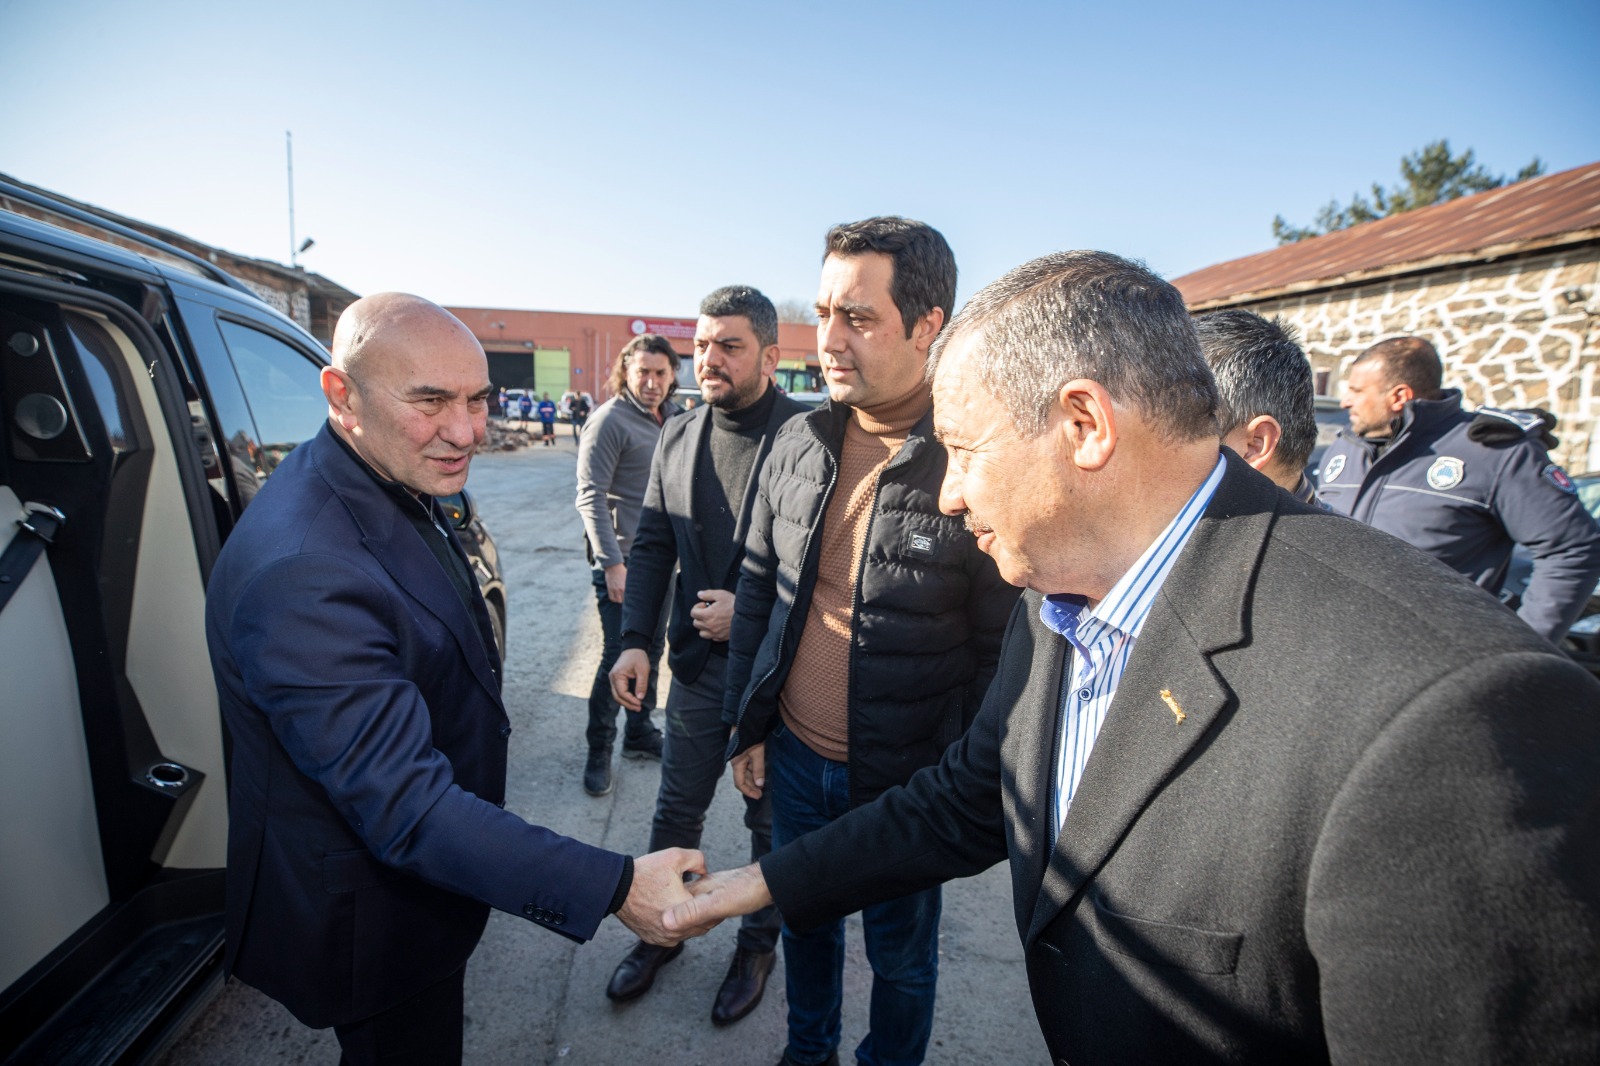 Başkan Soyer, Erzin Belediye Başkanı Elmasoğlu’nu ziyaret etti